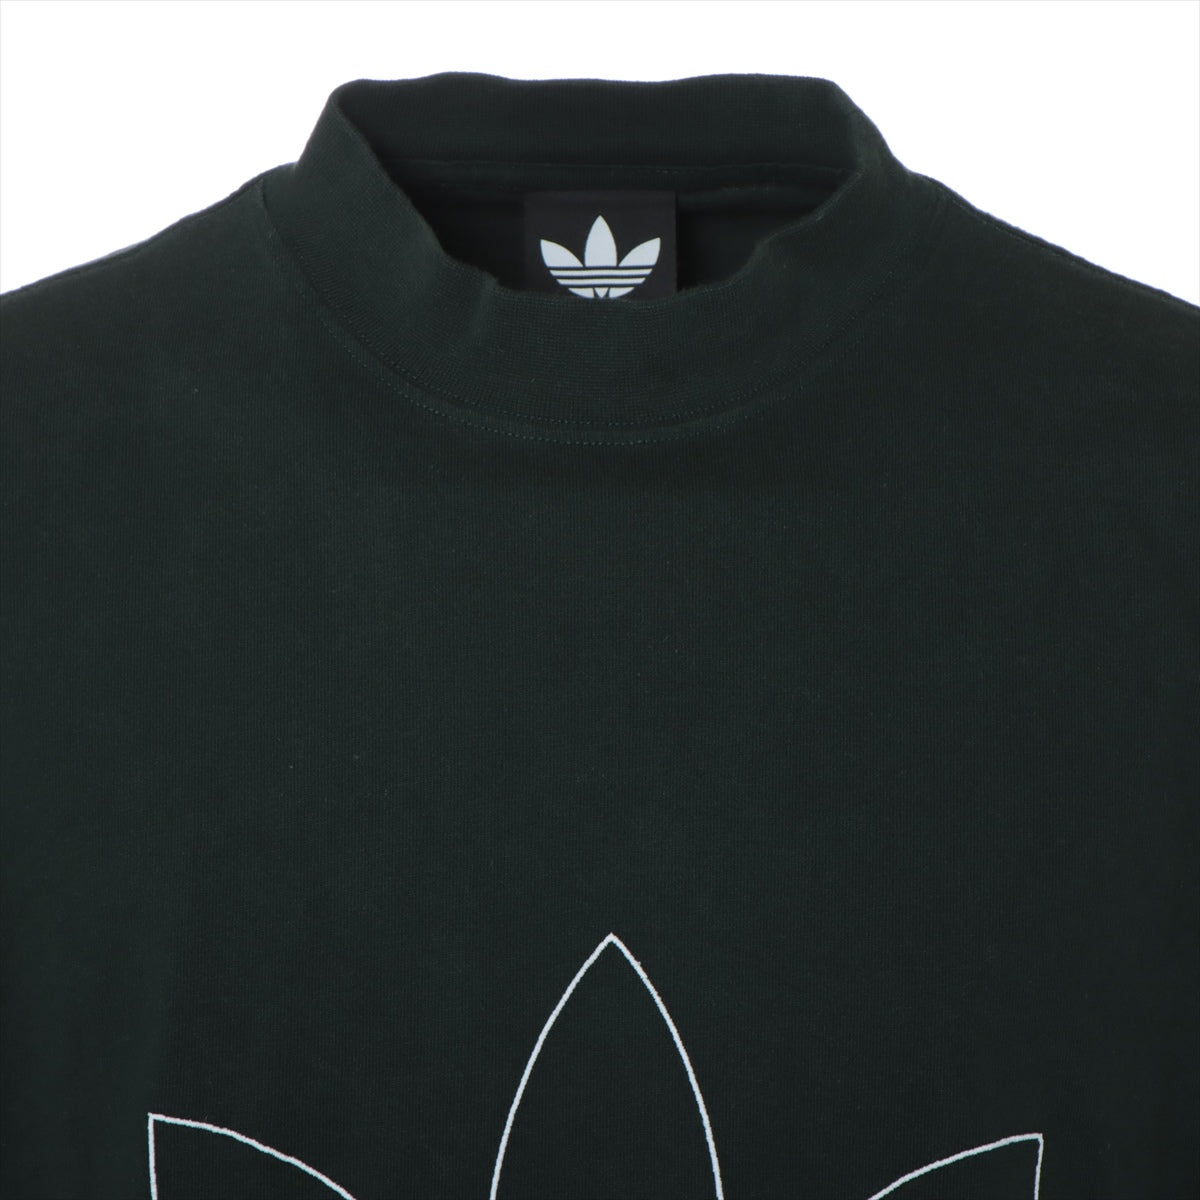 Balenciaga x adidas 22 years Cotton & Polyester T-shirt 3 Men's Green  723976